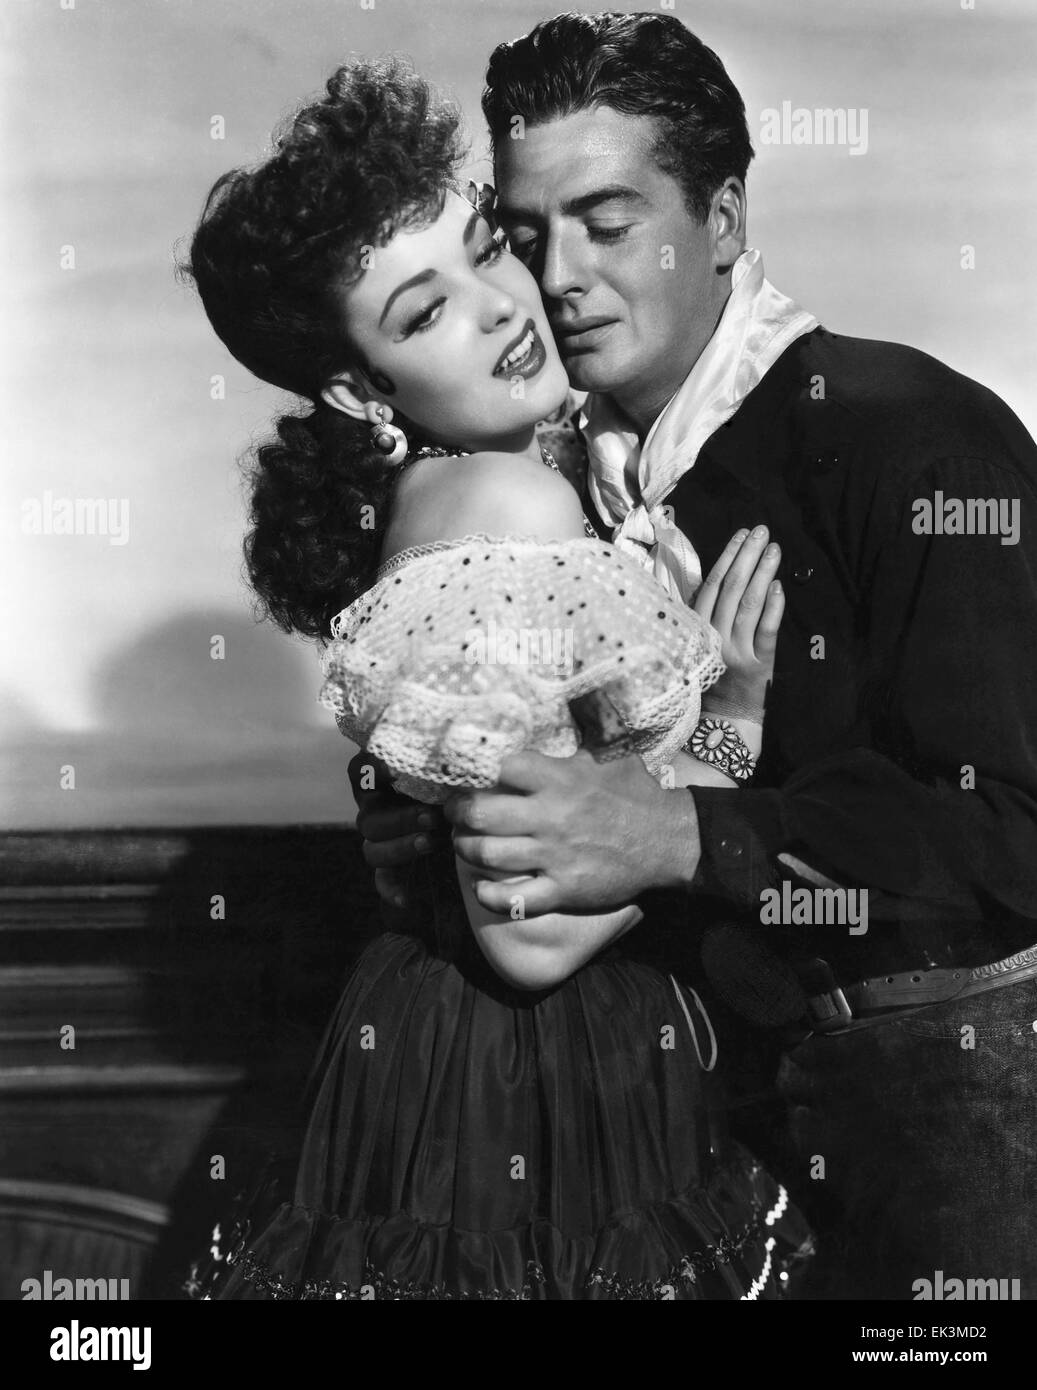 Linda Darnell, Victor mature, sur-ensemble du film 'My Darling Clementine', 1946, 20th Century Fox Film Corp. Tous droits réservés Banque D'Images